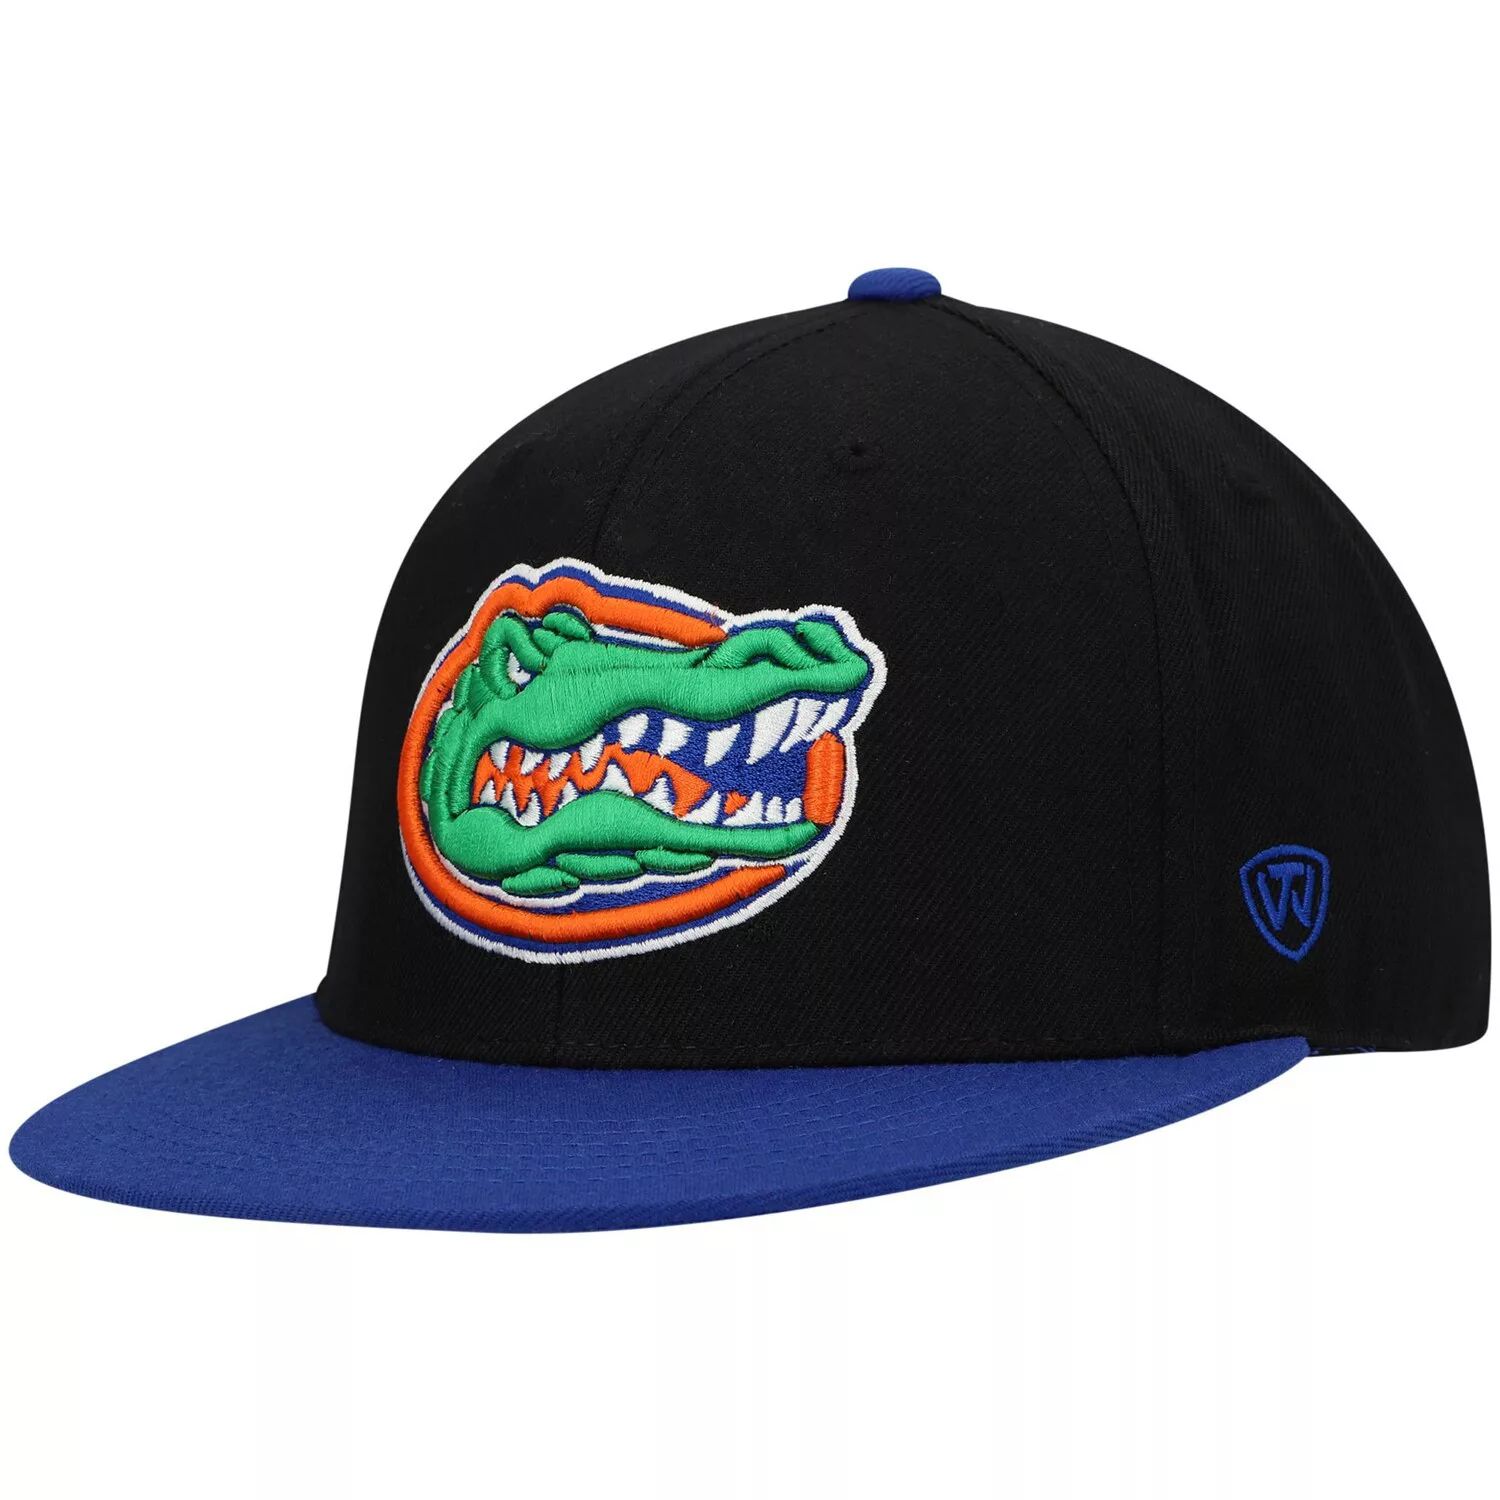 Мужская двухцветная приталенная шляпа черного цвета/королевского цвета команды Florida Gators Team Top of the World